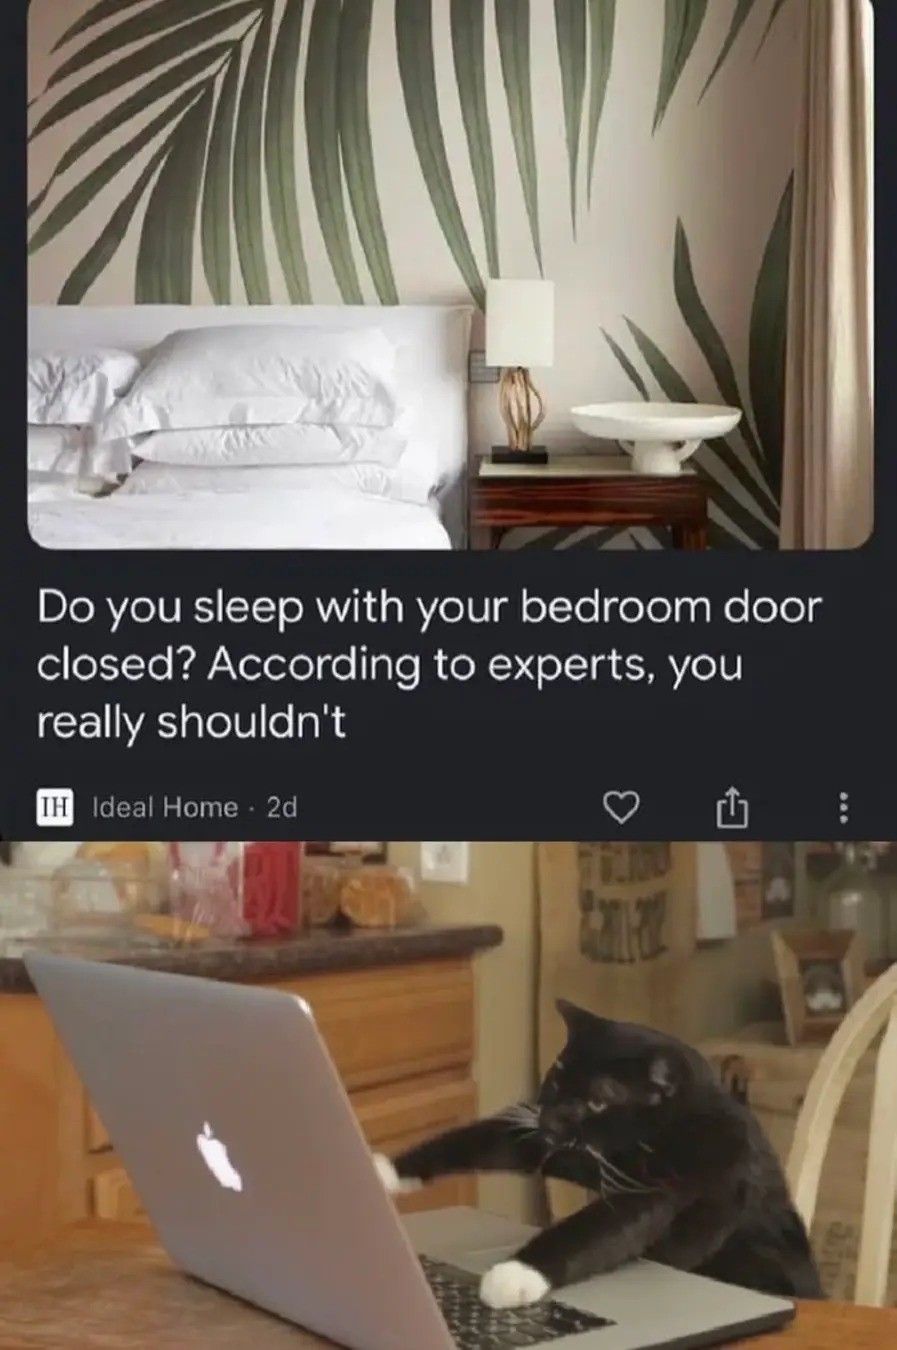 "experts?" on what? Bedroom doors?